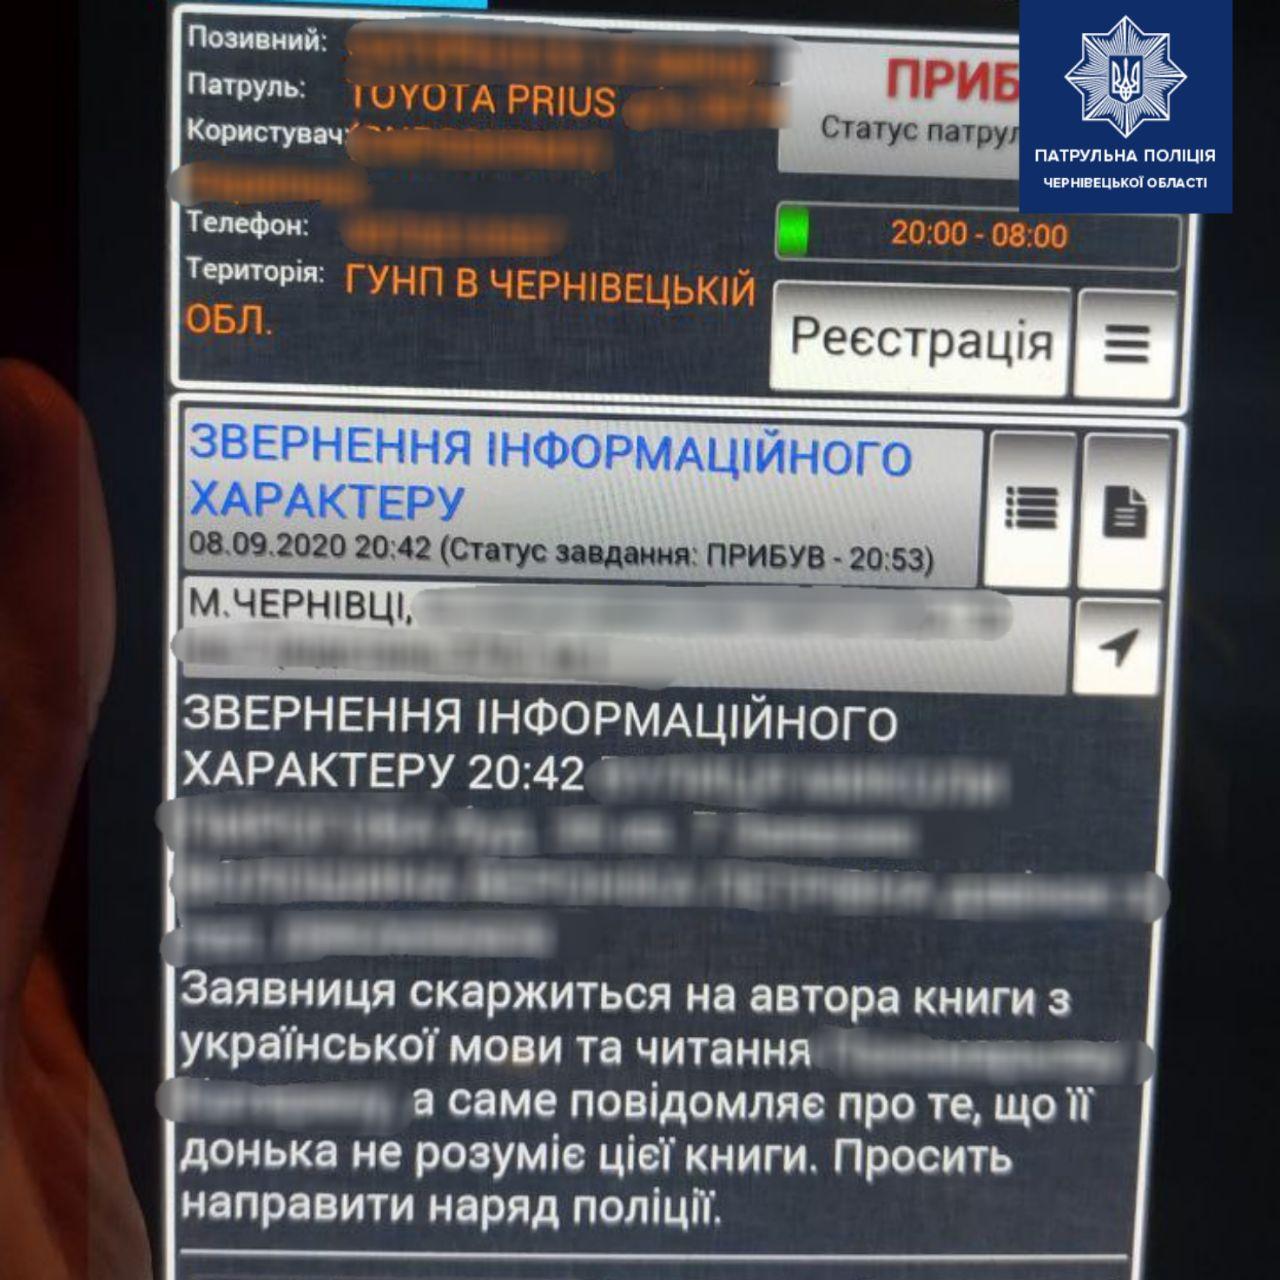 В Черновцах женщина вызвала полицию из-за учебника украинского. Скриншот фейсбук-страницы полиции